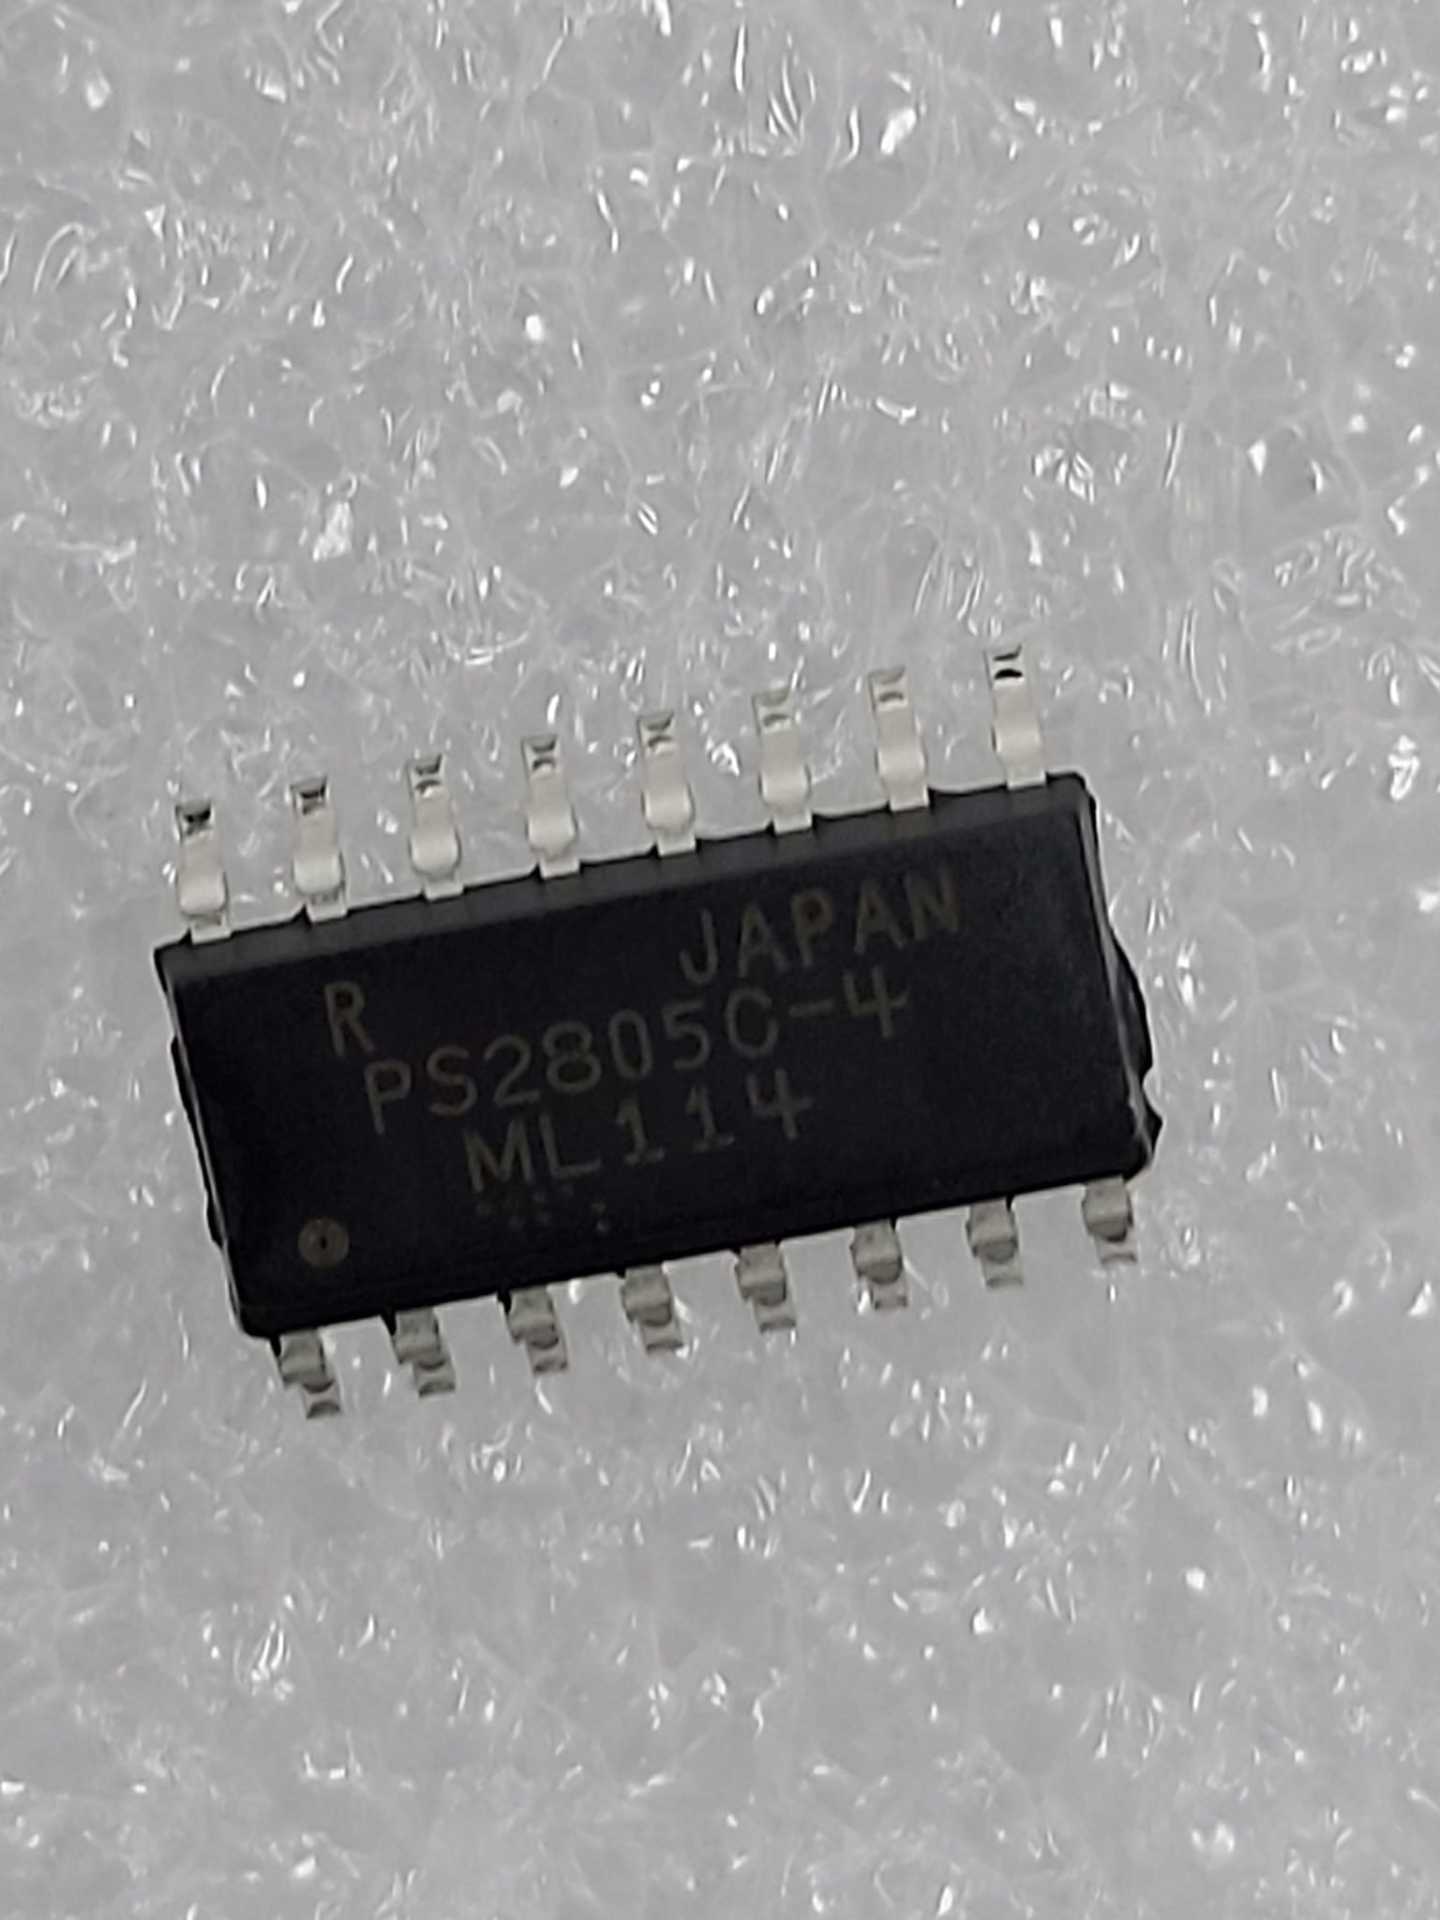 PS2805C-4